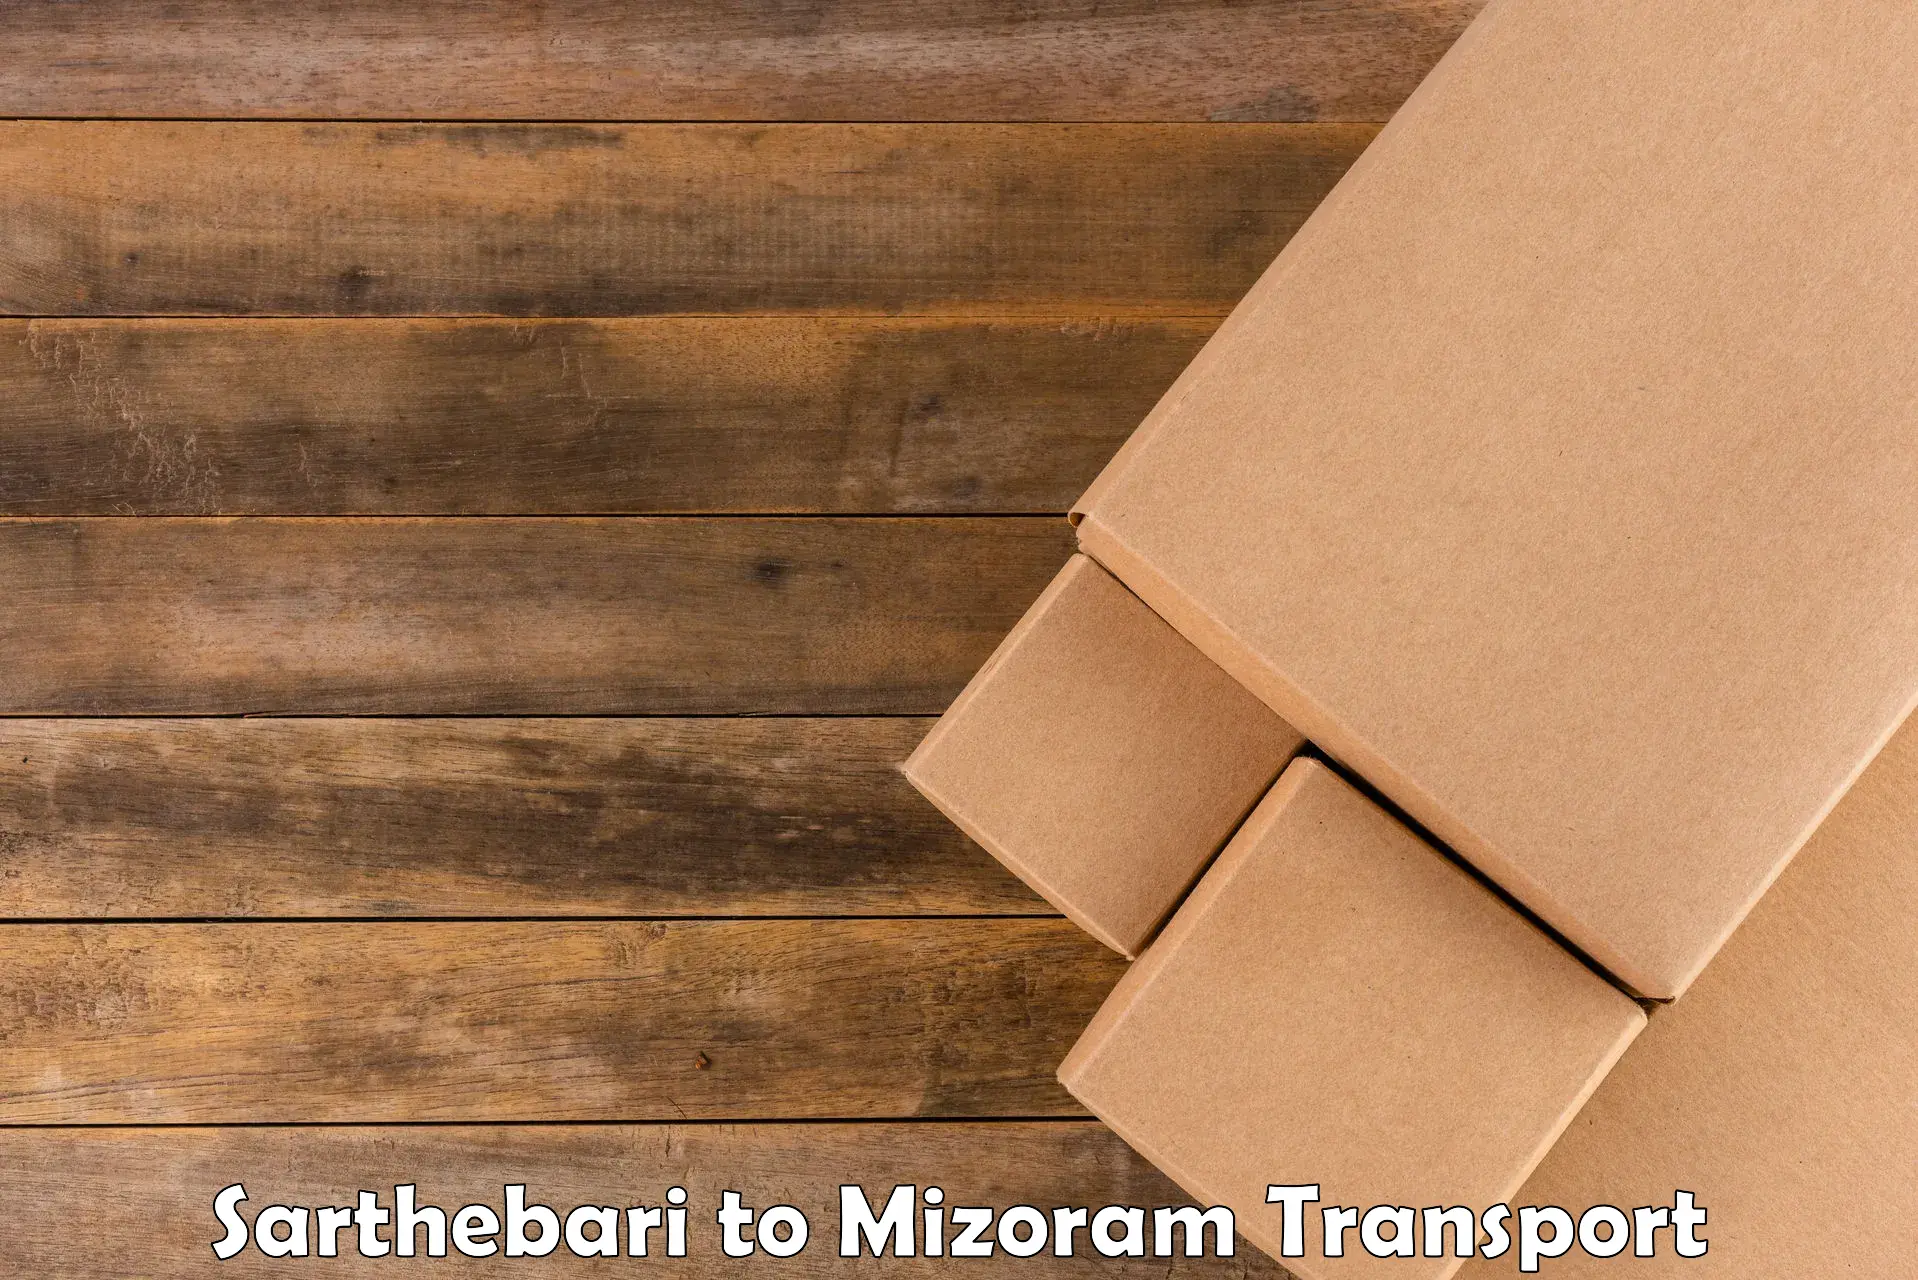 Land transport services Sarthebari to Mizoram